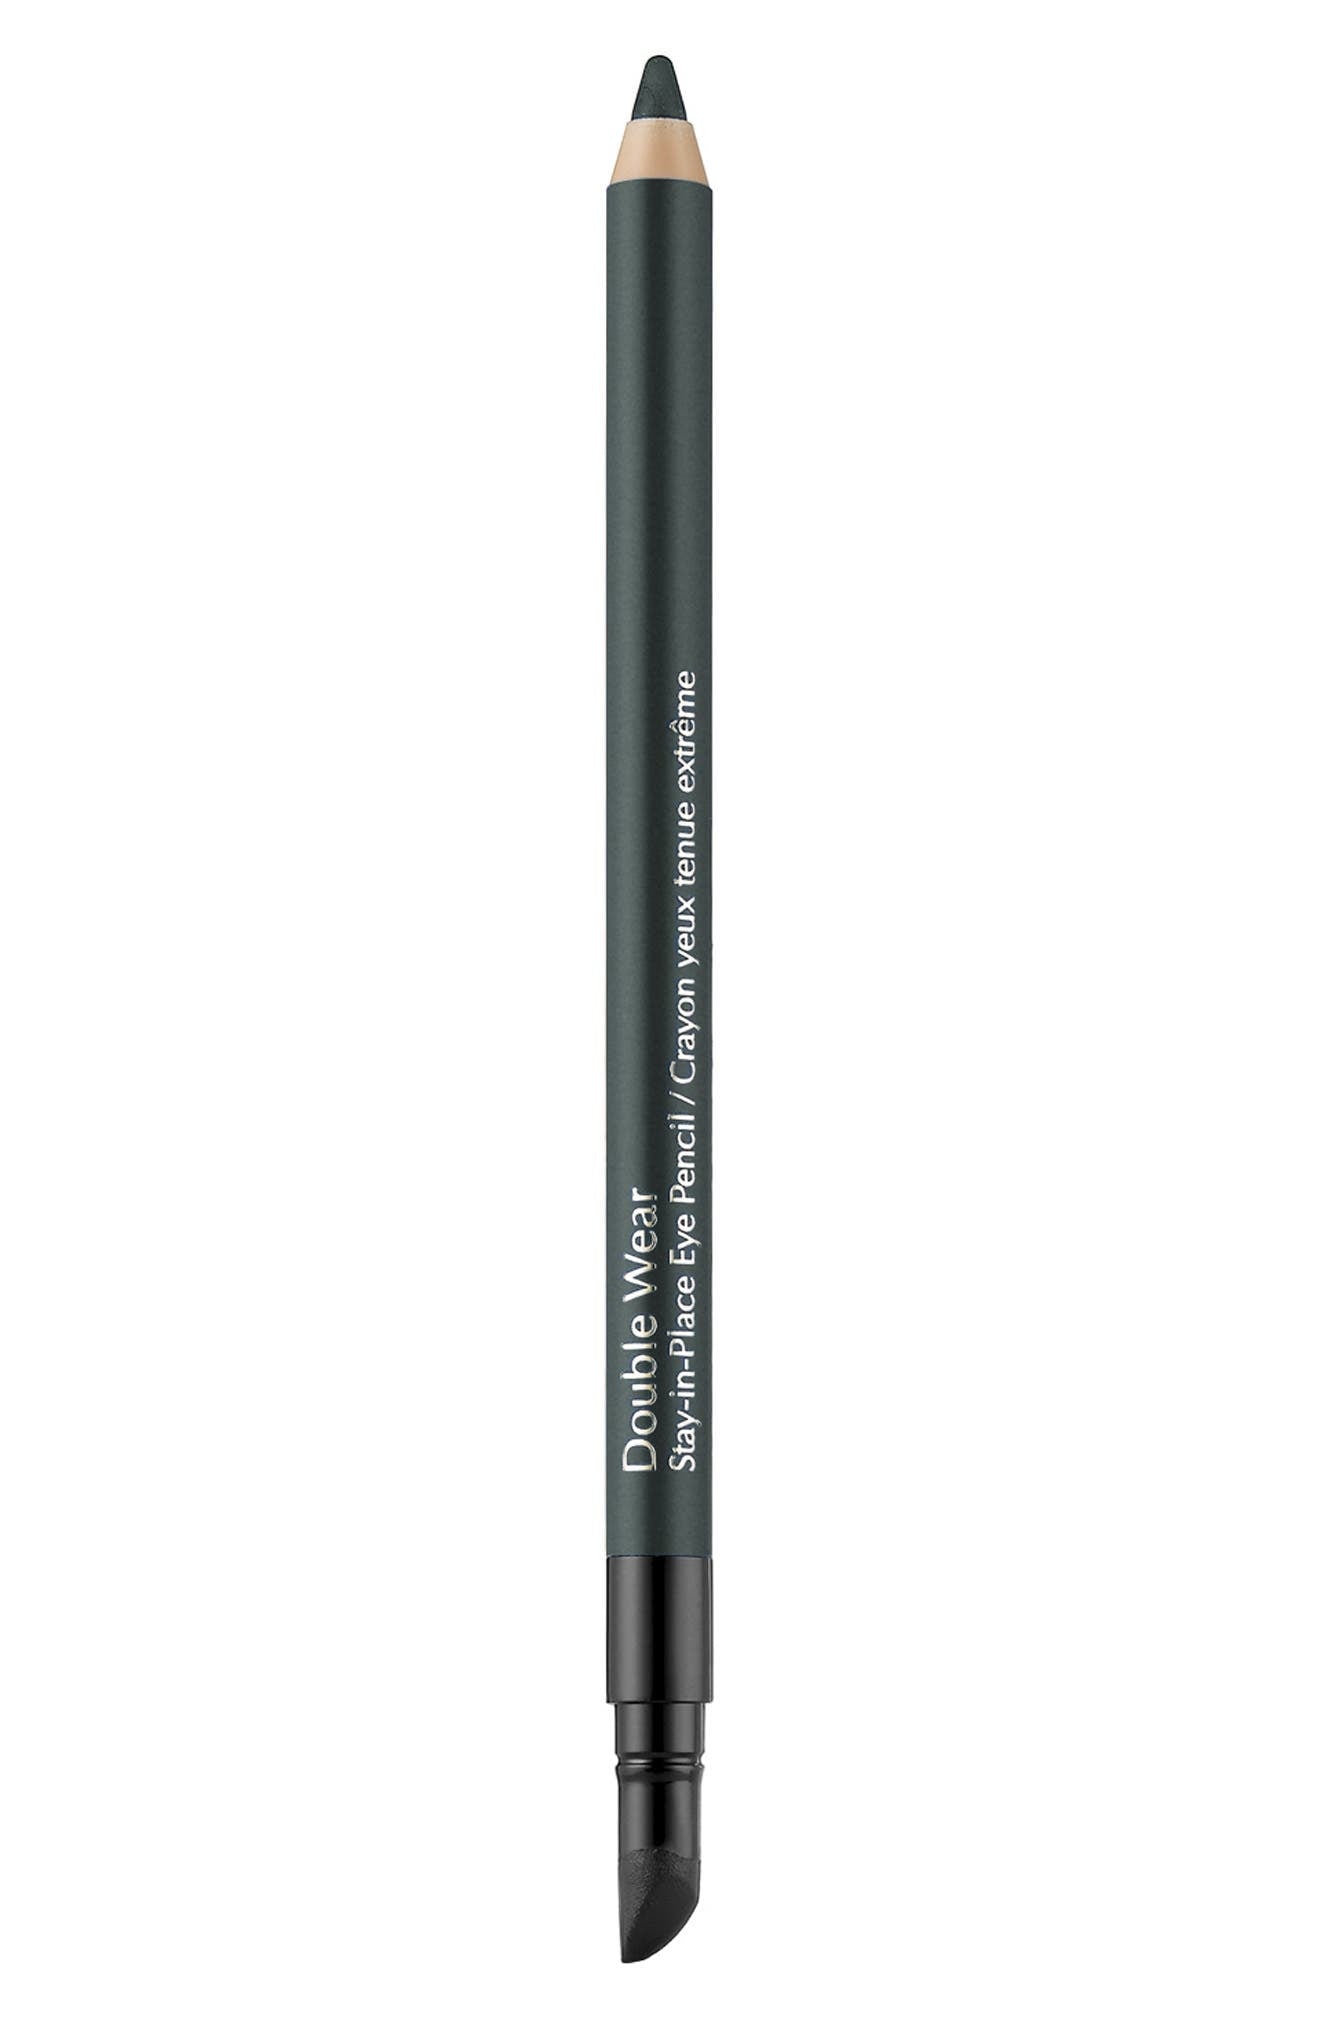 Estee Lauder Double Wear Stay-in-Place Eye Pencil